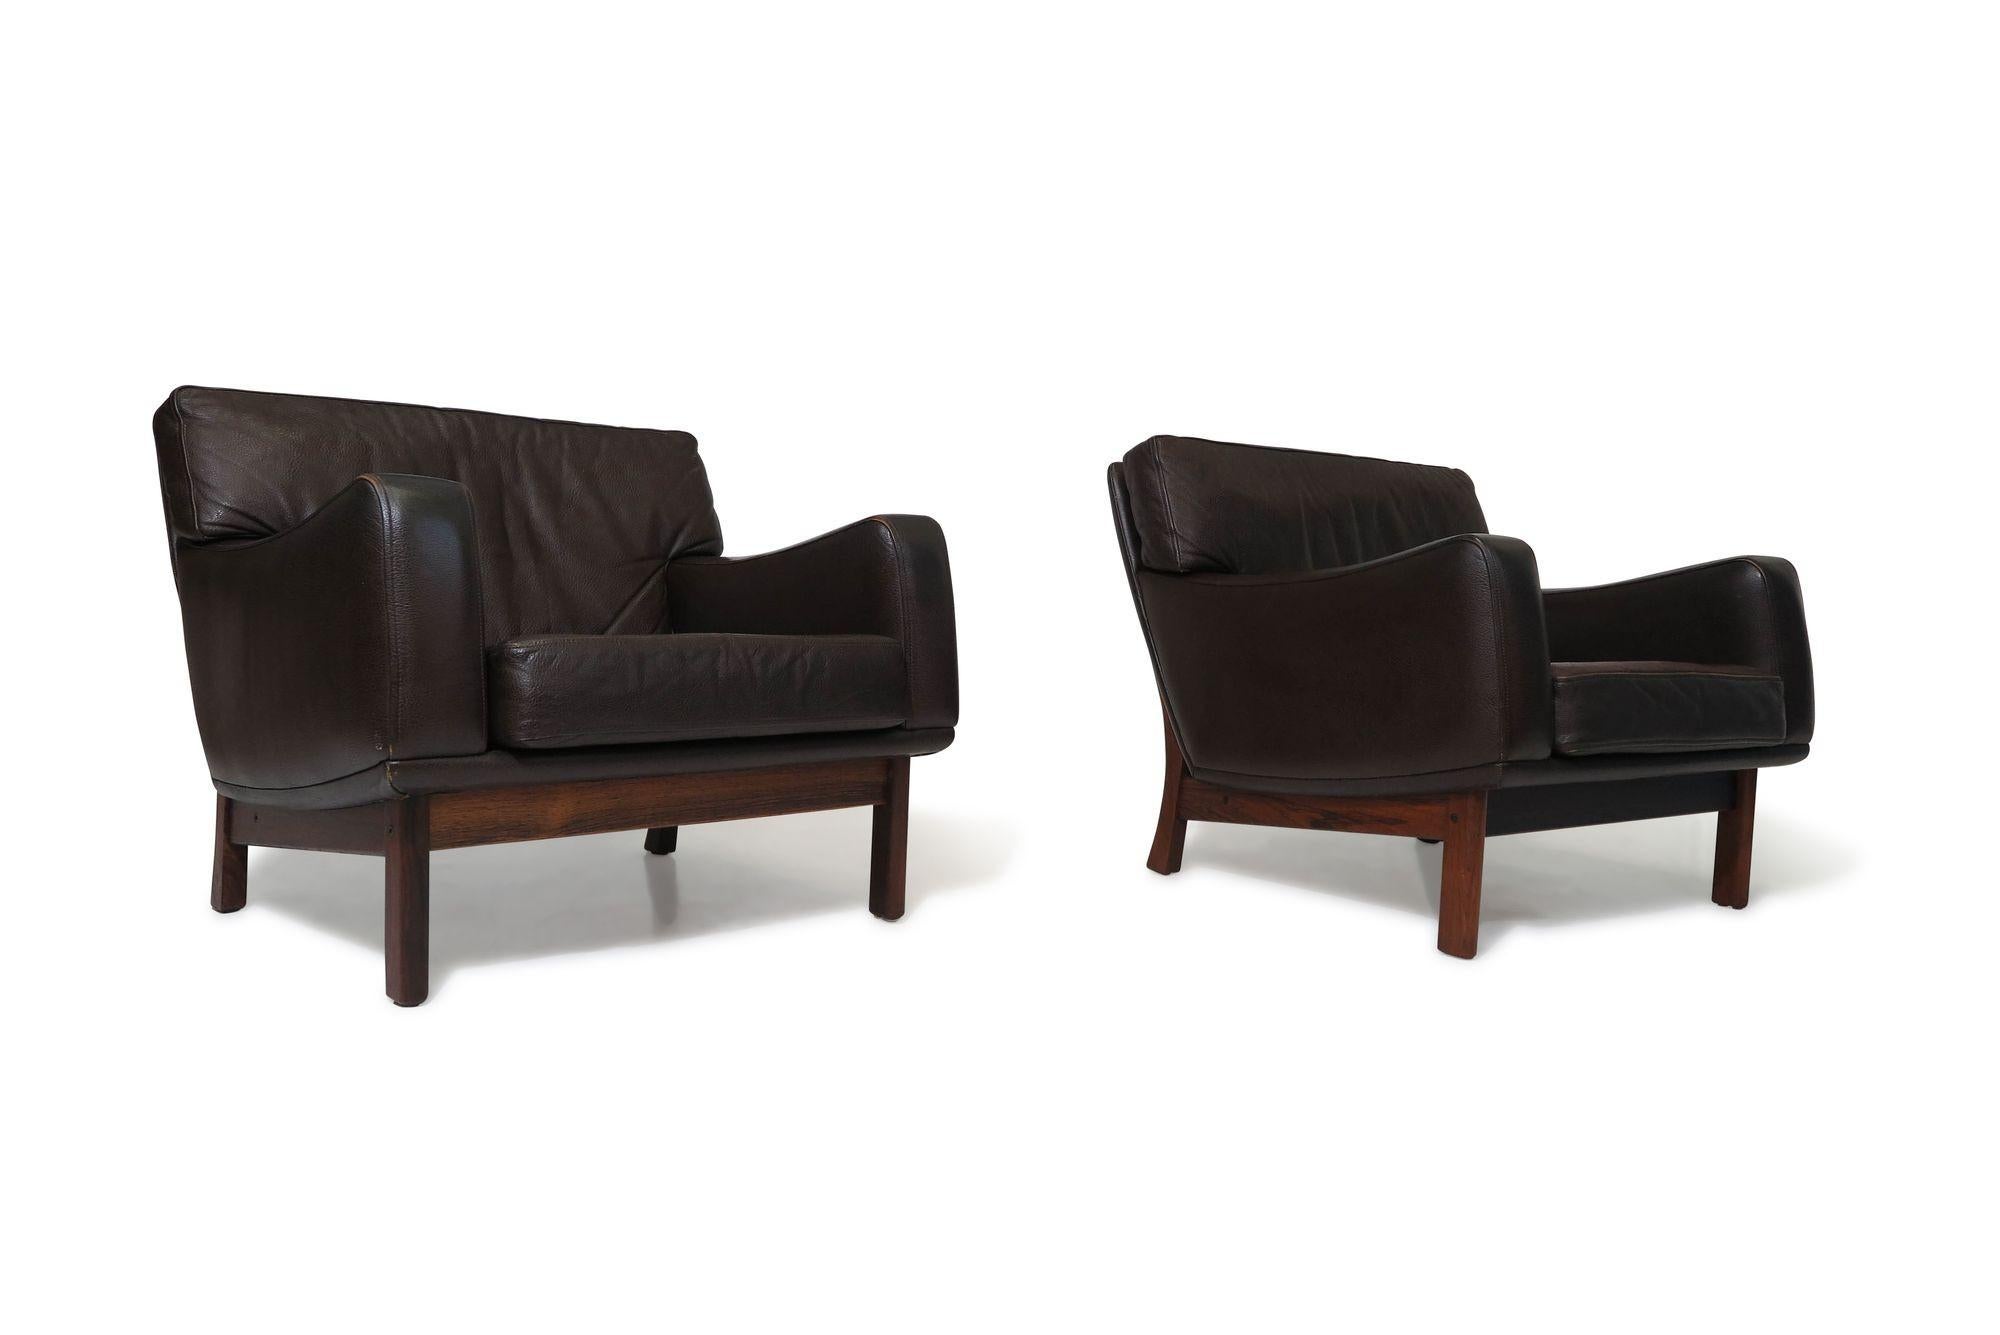 Hochwertige dänische Loungesessel mit Massivholzrahmen und Polsterung aus braunem Originalleder. Diese Stühle sind mit doppelt abgesteppten Kissen aus genarbtem Leder ausgestattet und stehen auf ausgestellten, geschwungenen Beinen aus